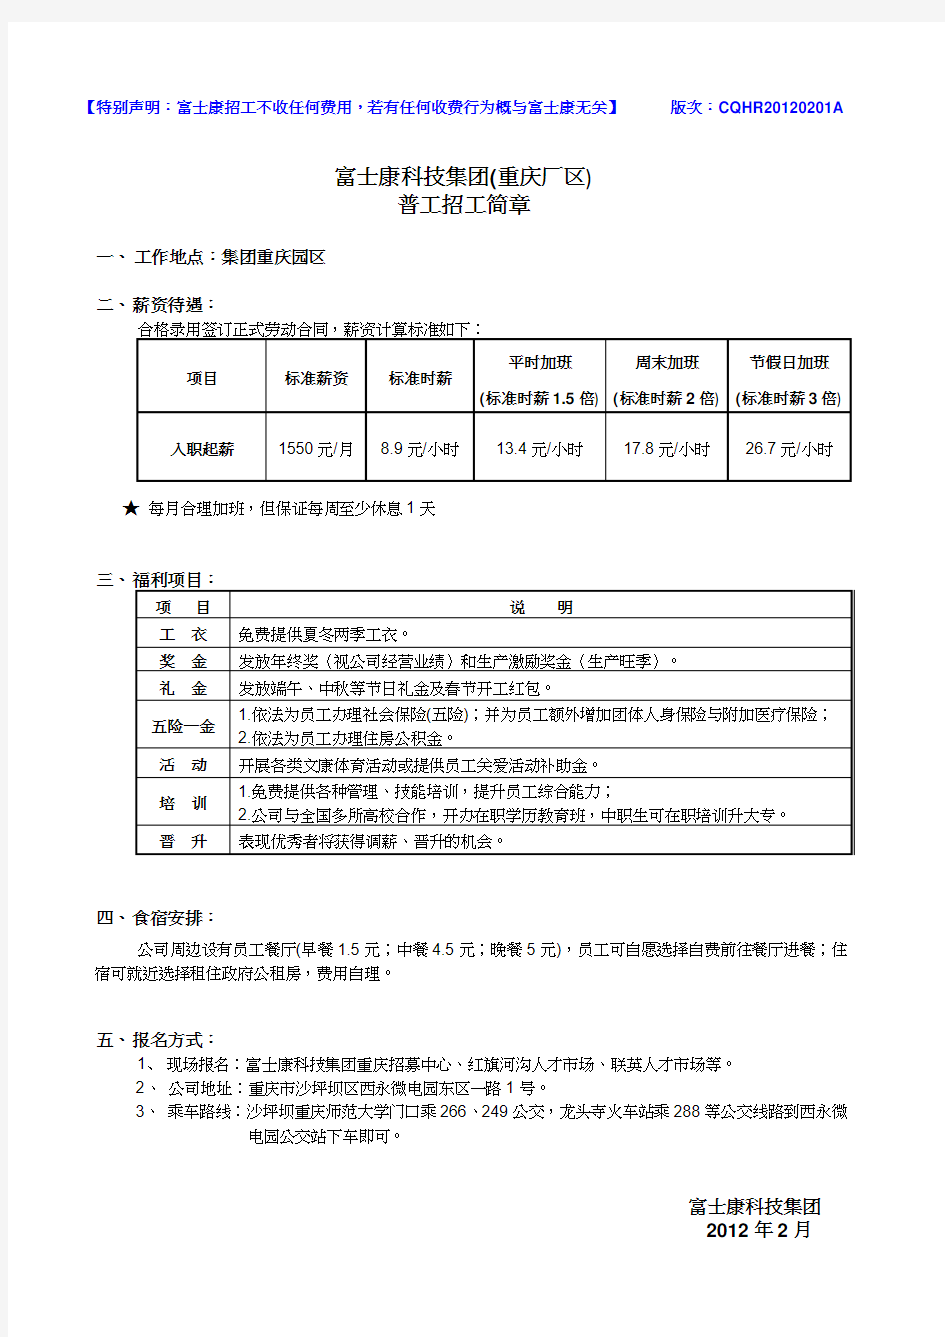 富士康科技集团重庆厂区招工简章20120201A版